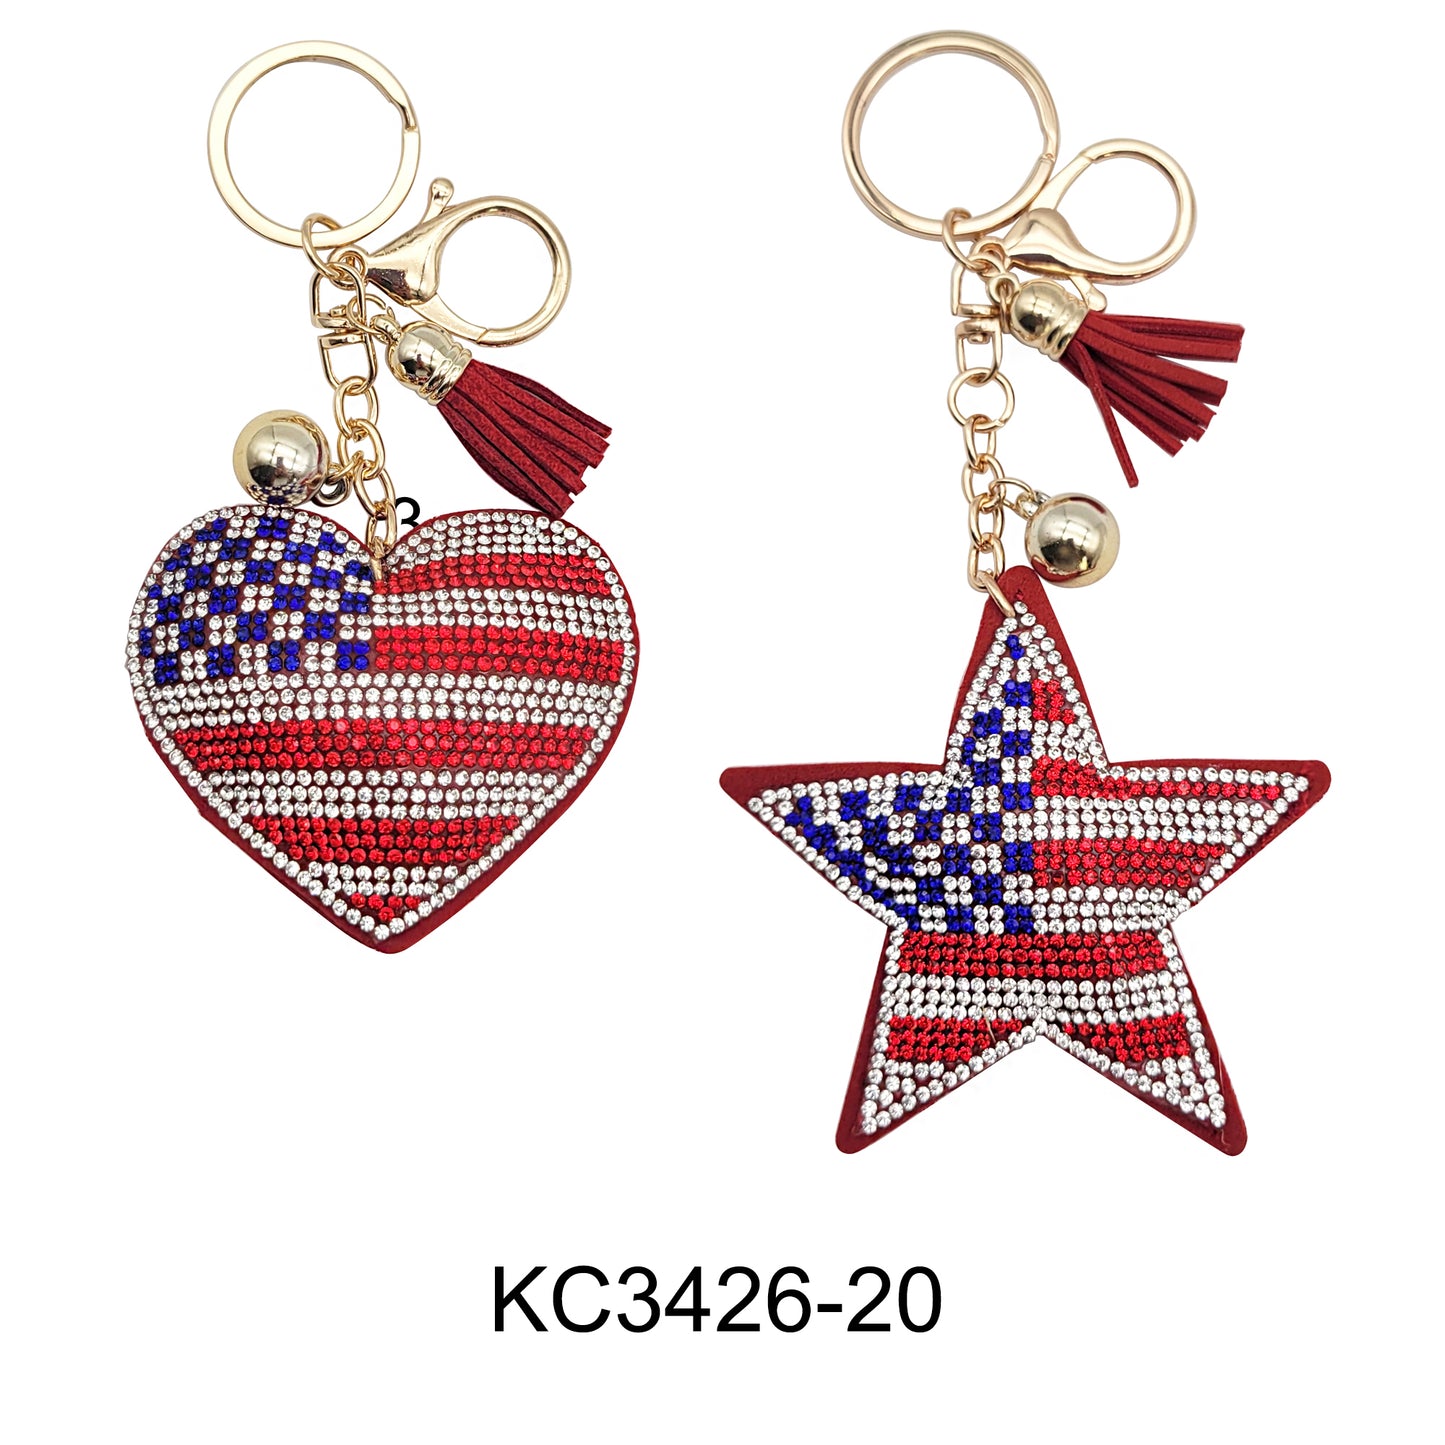 RHINESTONE AMERICA FLAG HEART N STAR KEY CHAIN 3426-20 (12PC)